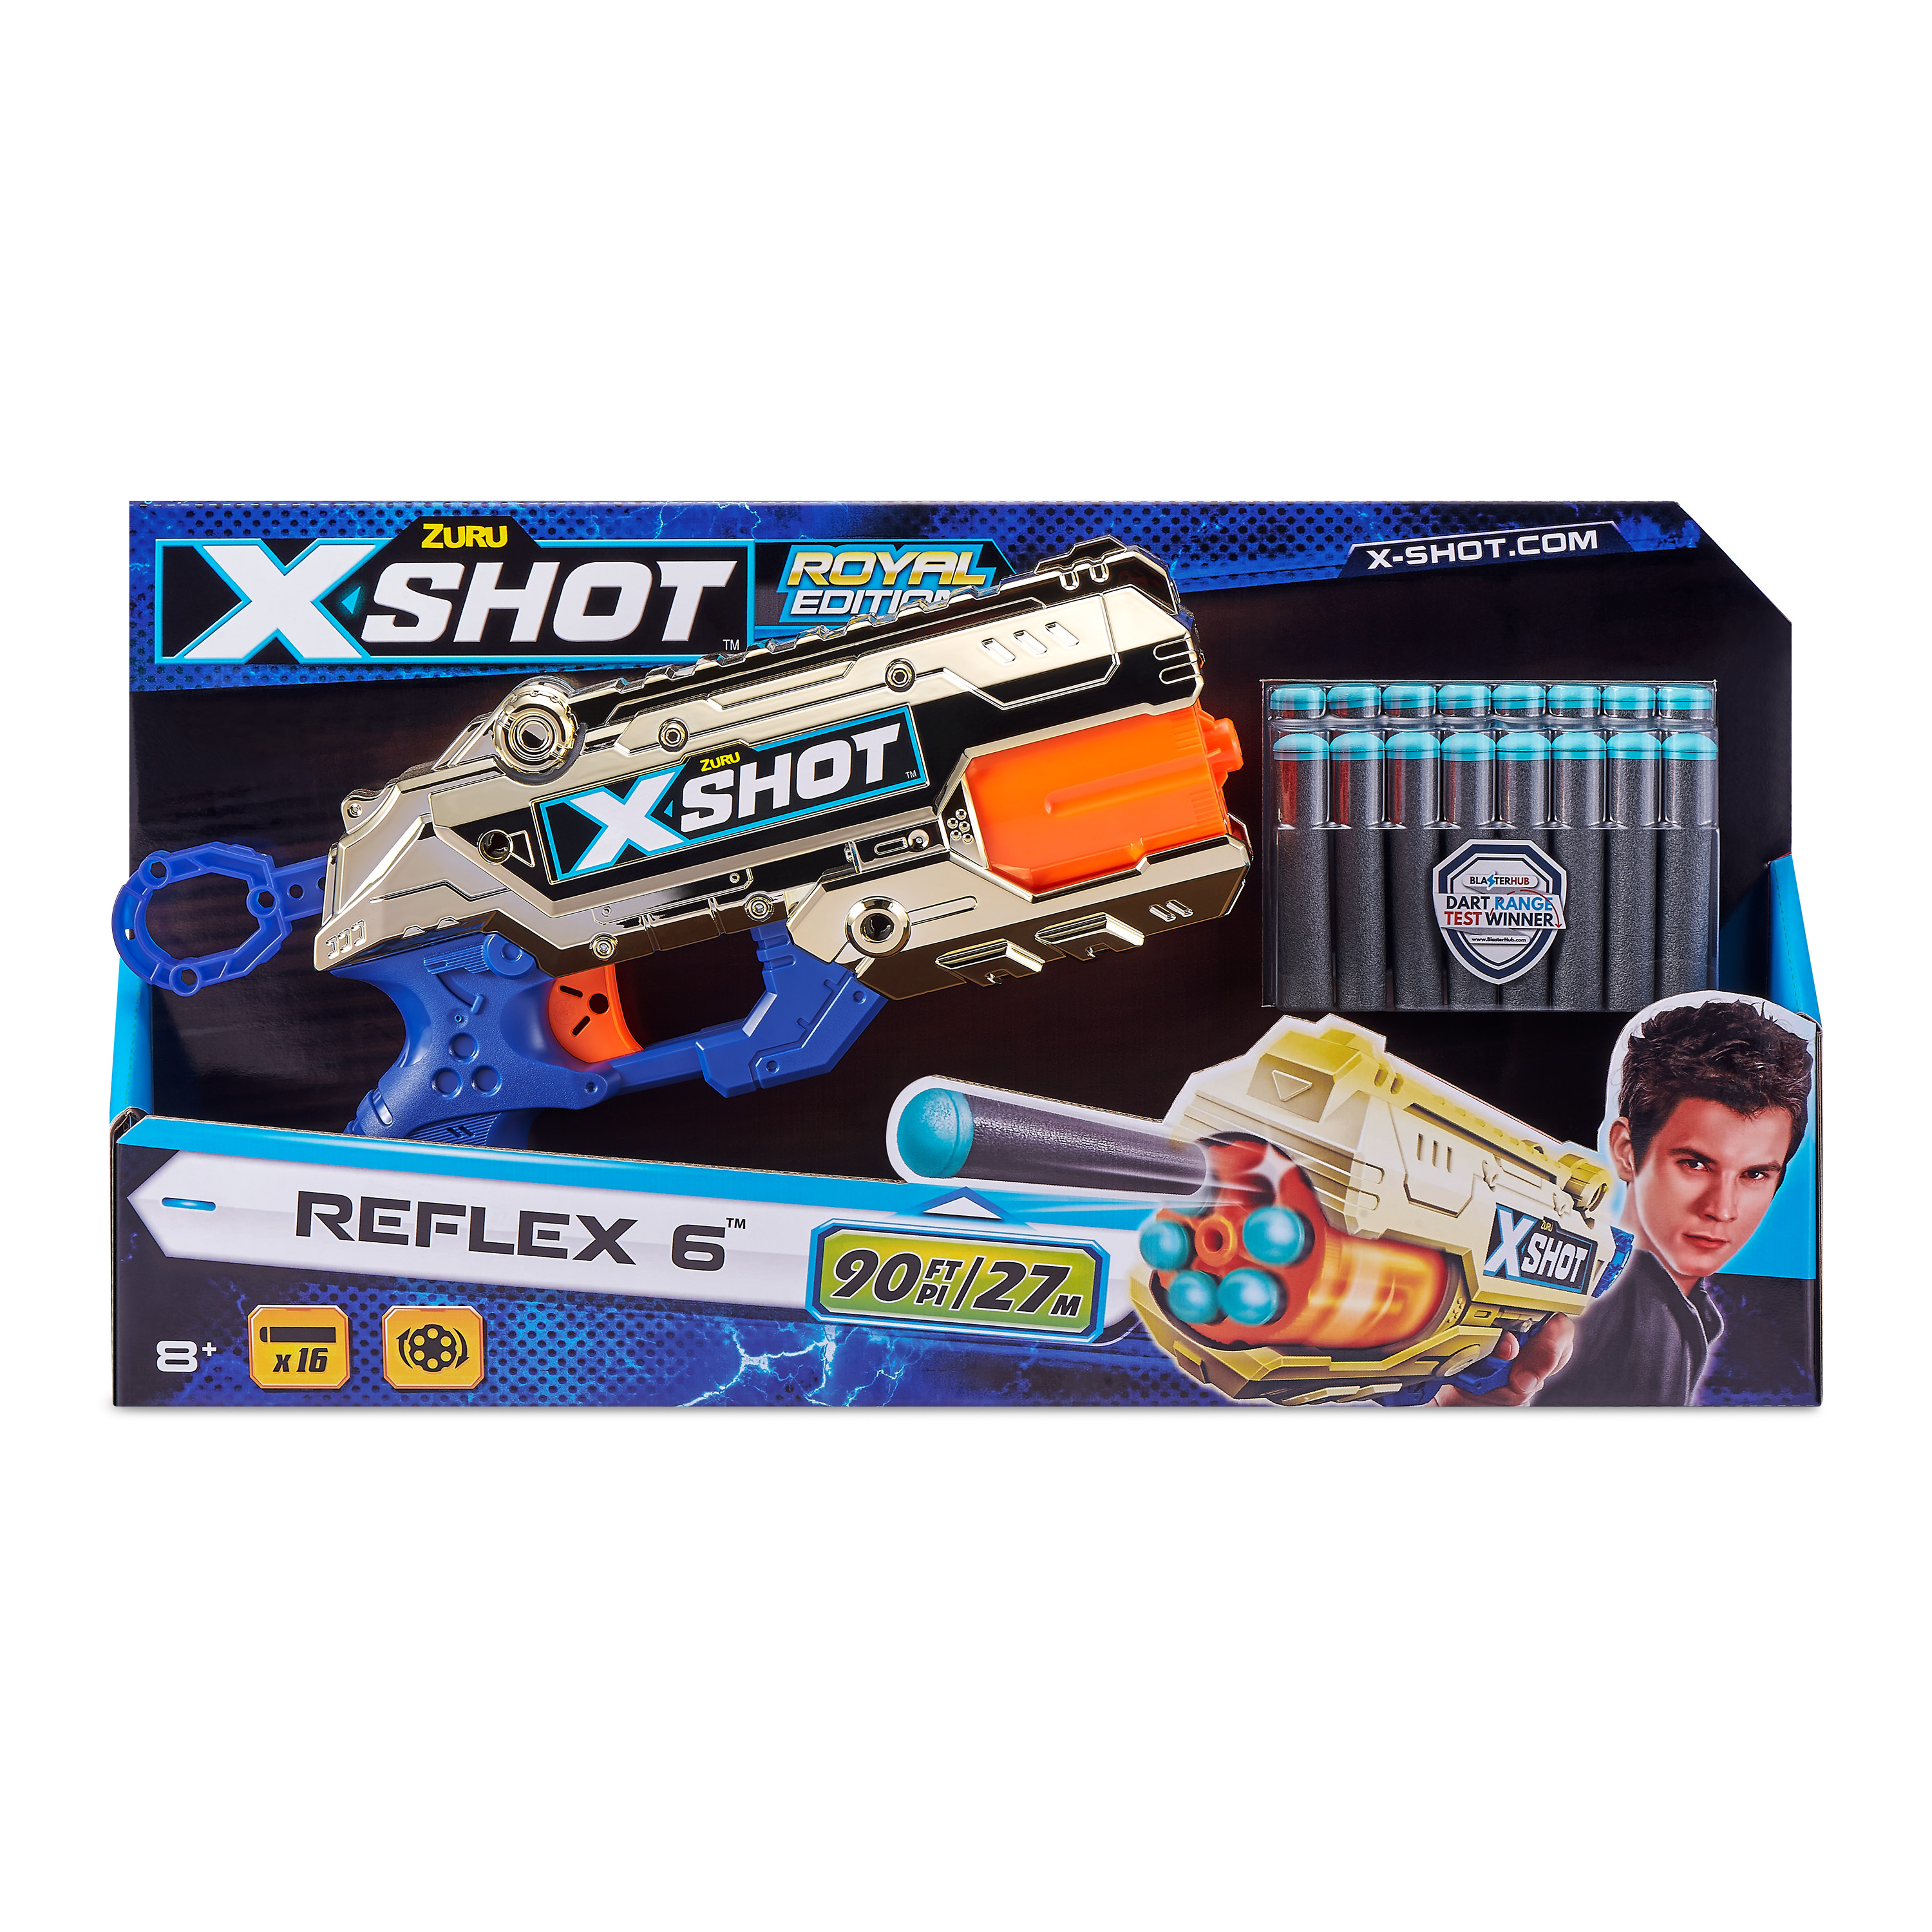 X-SHOT - Gold Reflex 6